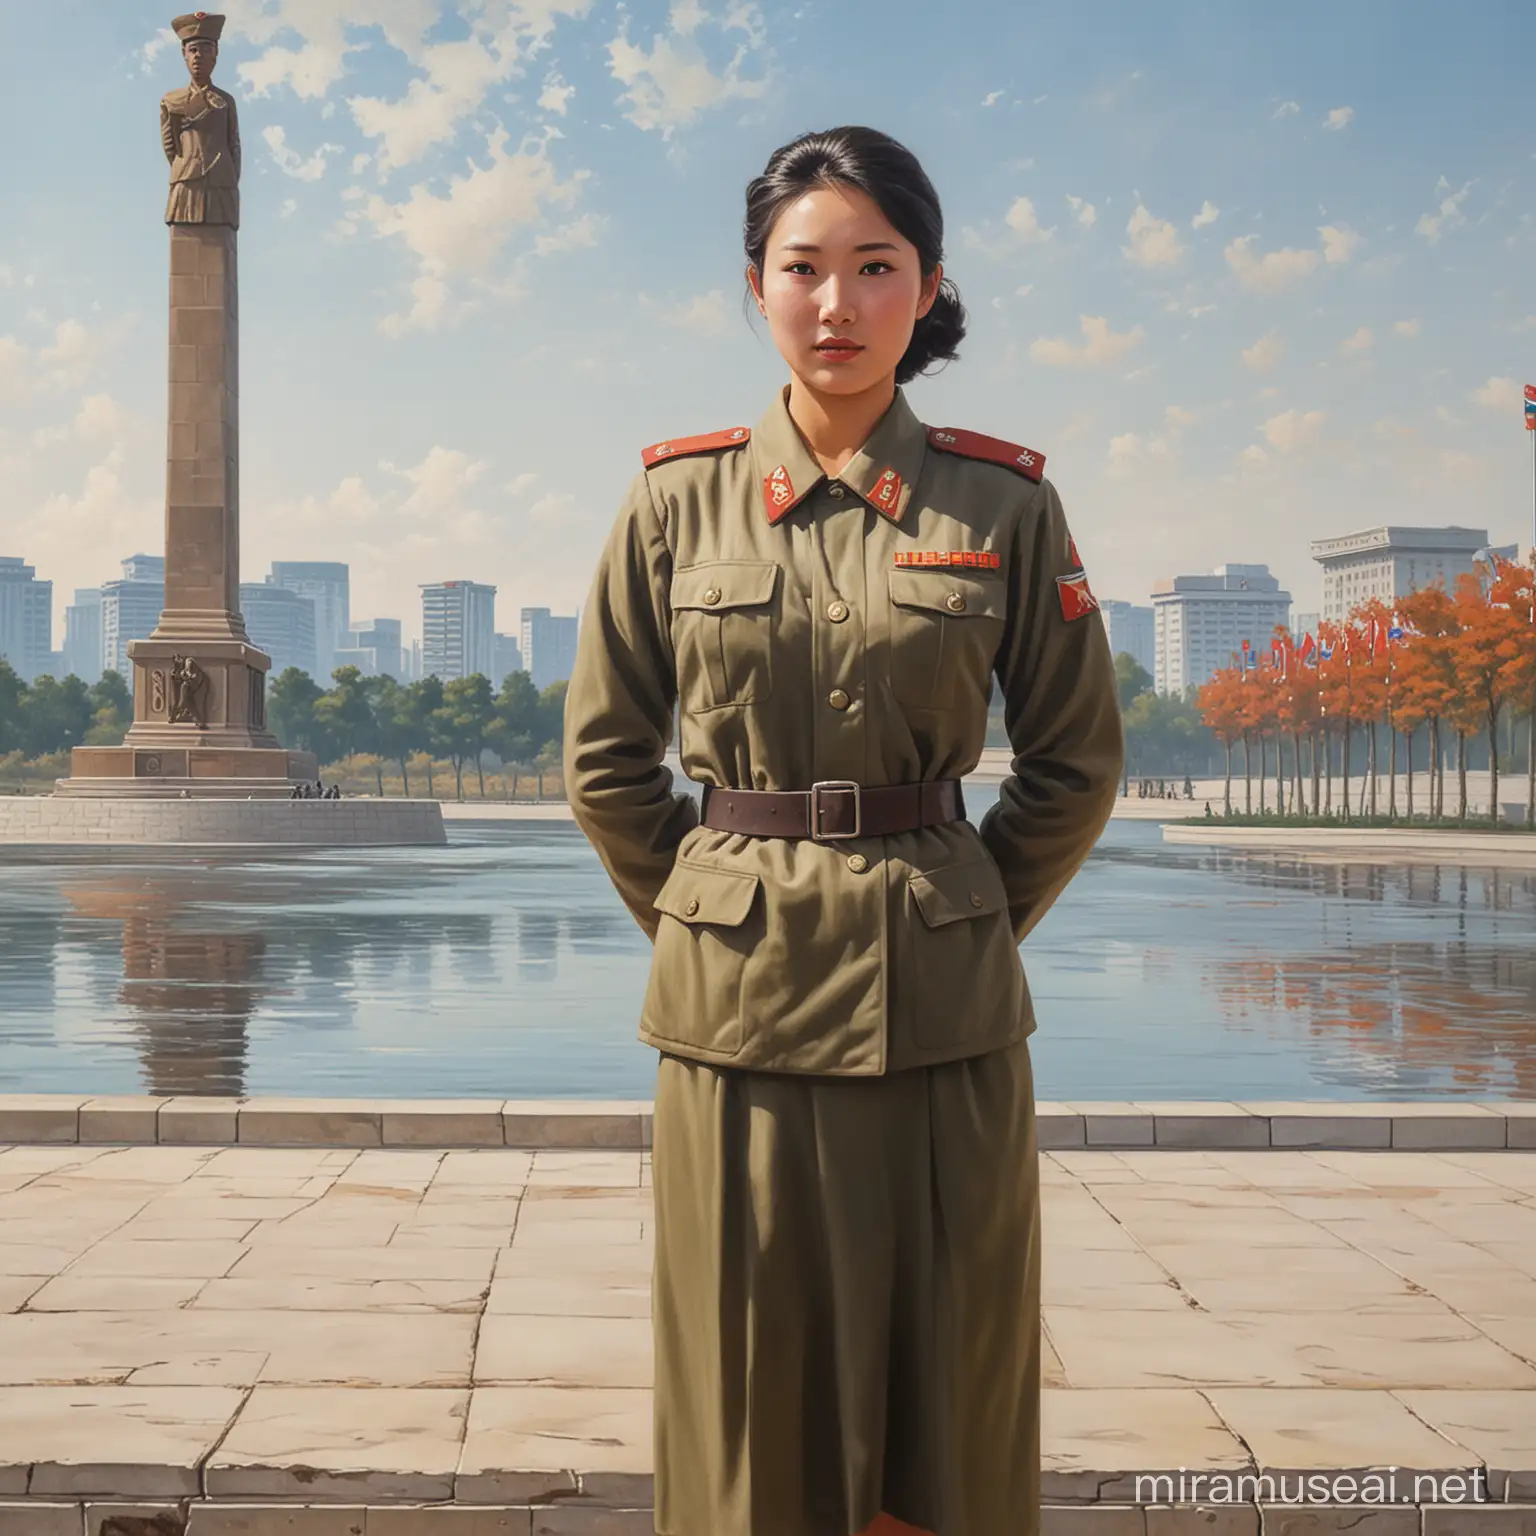 Peinture impressionniste, femme soldat nord coréenne devant la statut du Juche à Pyongyang